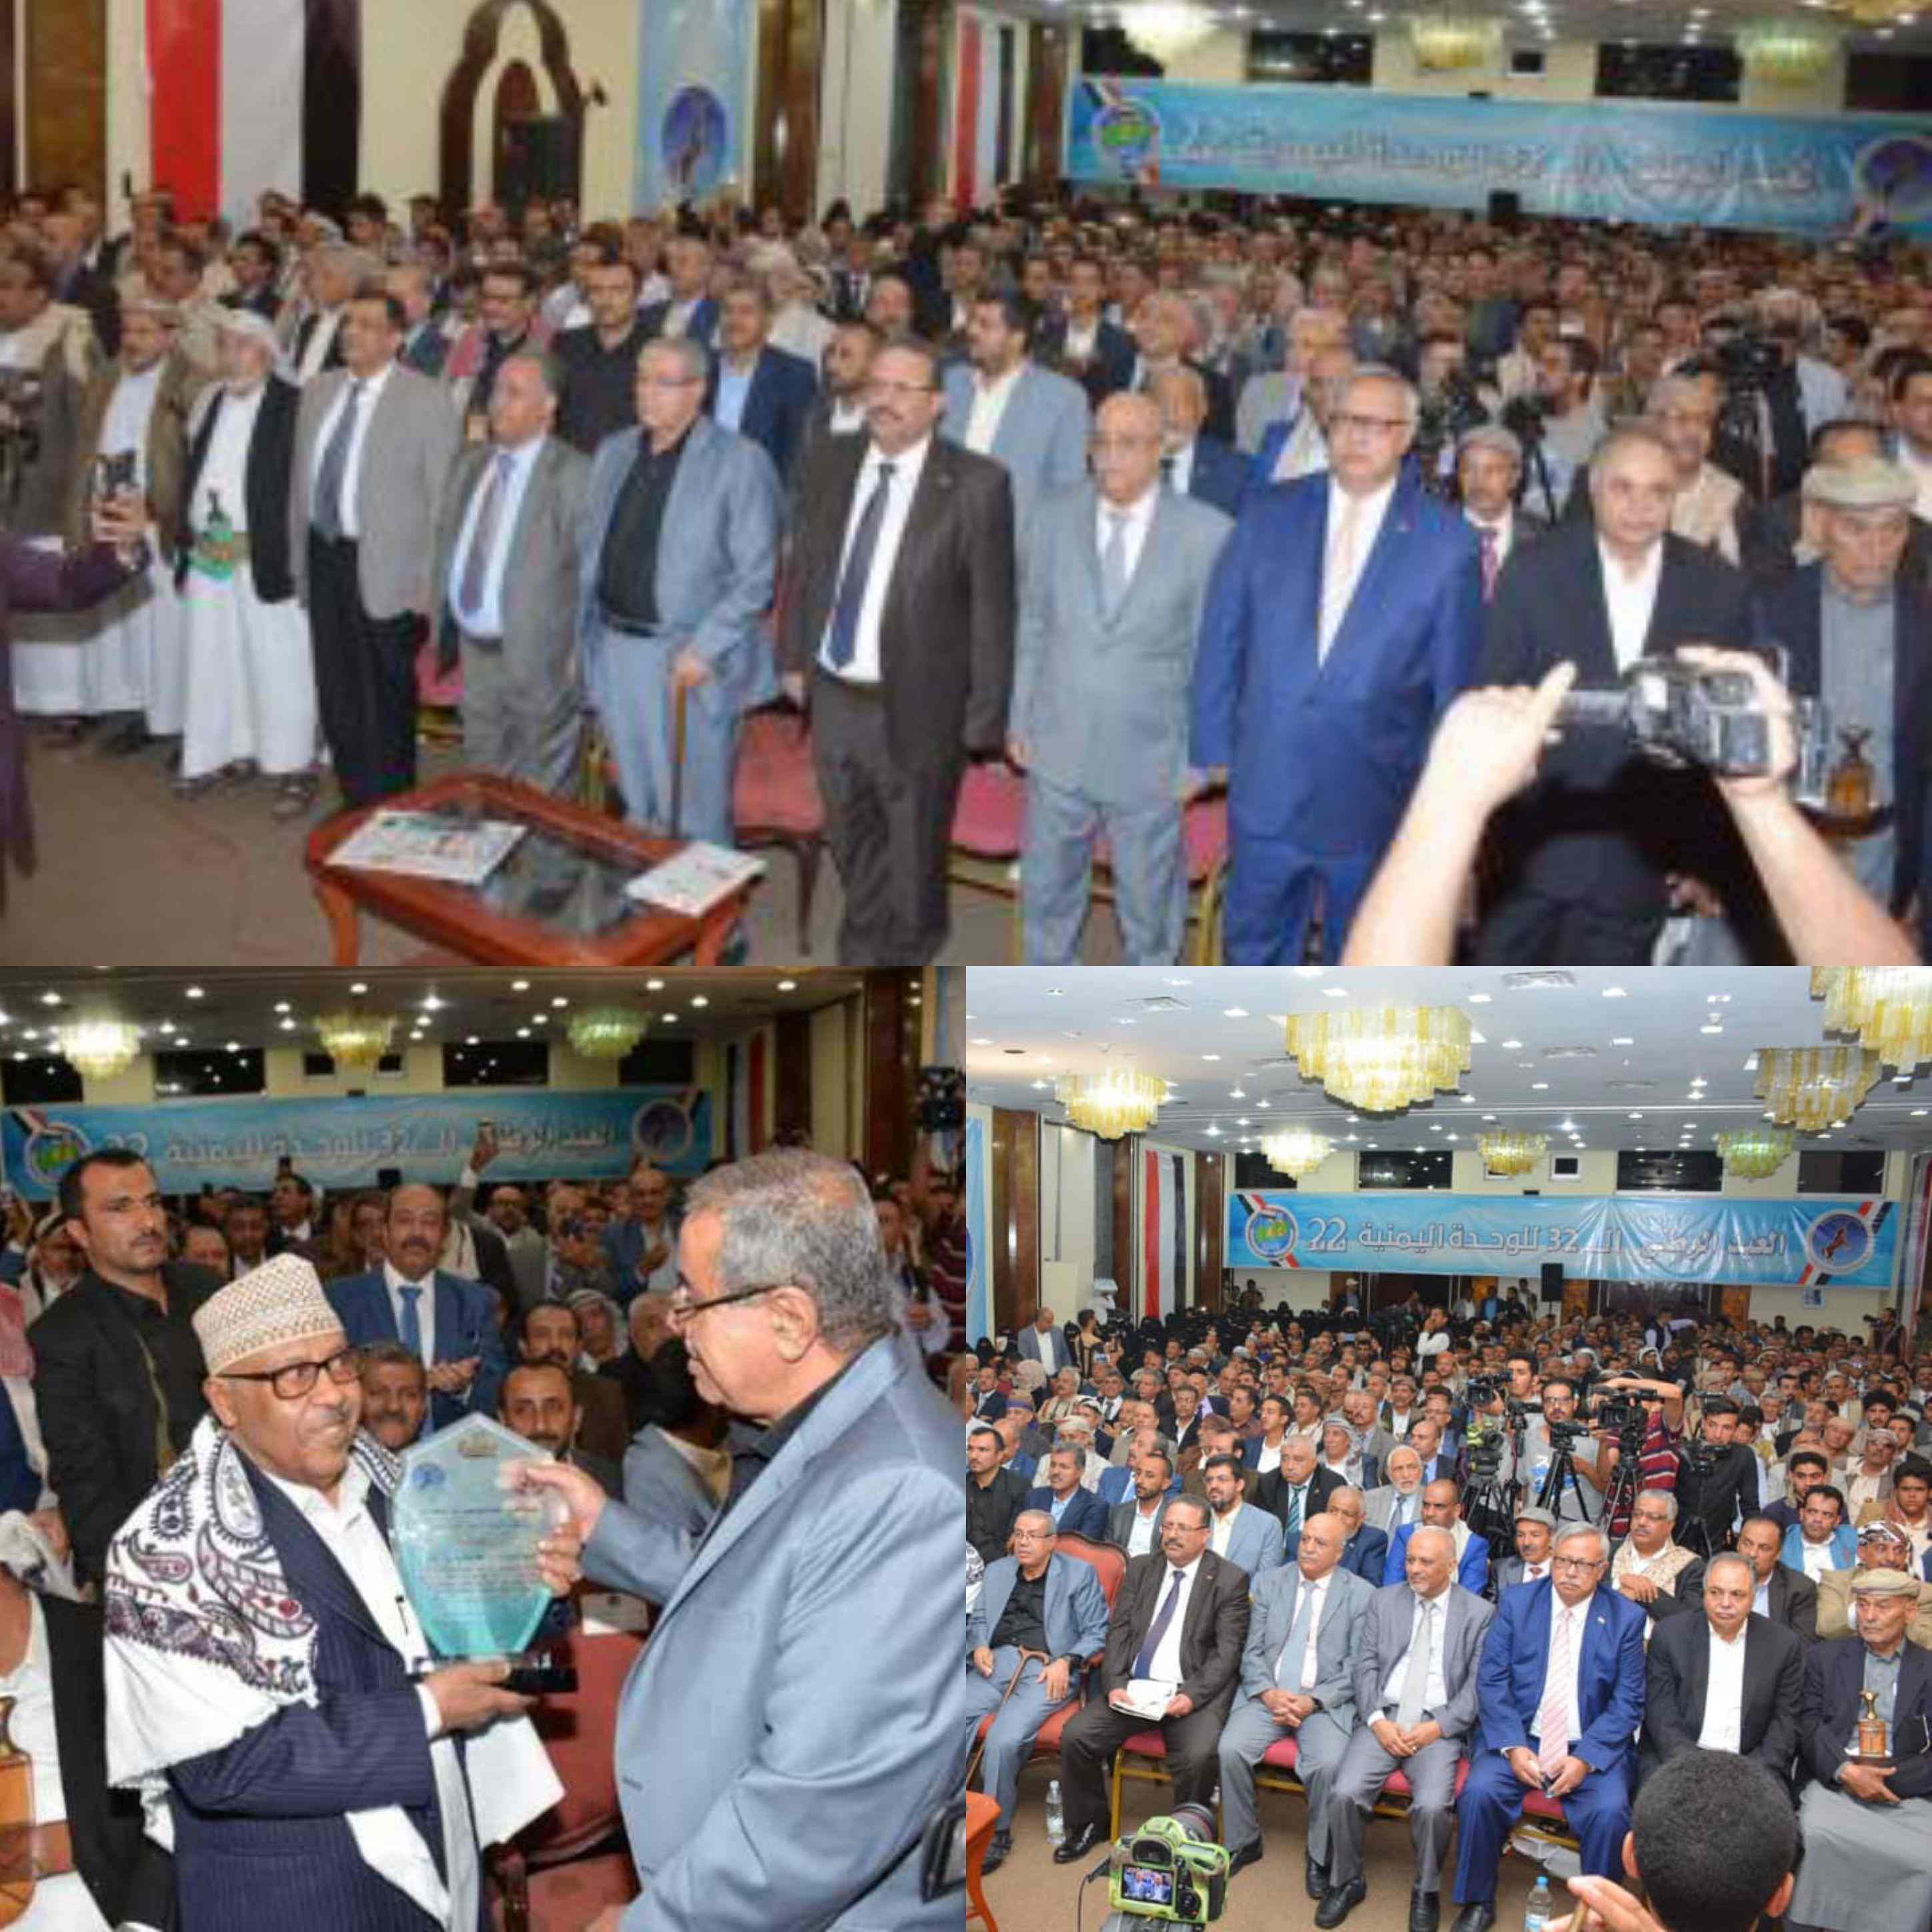 المؤتمر الشعبي العام يحتفل بالعيد الوطني ال32 للجمهورية اليمنية ويمنح الفنان أيوب طارش درع ال22 من مايو